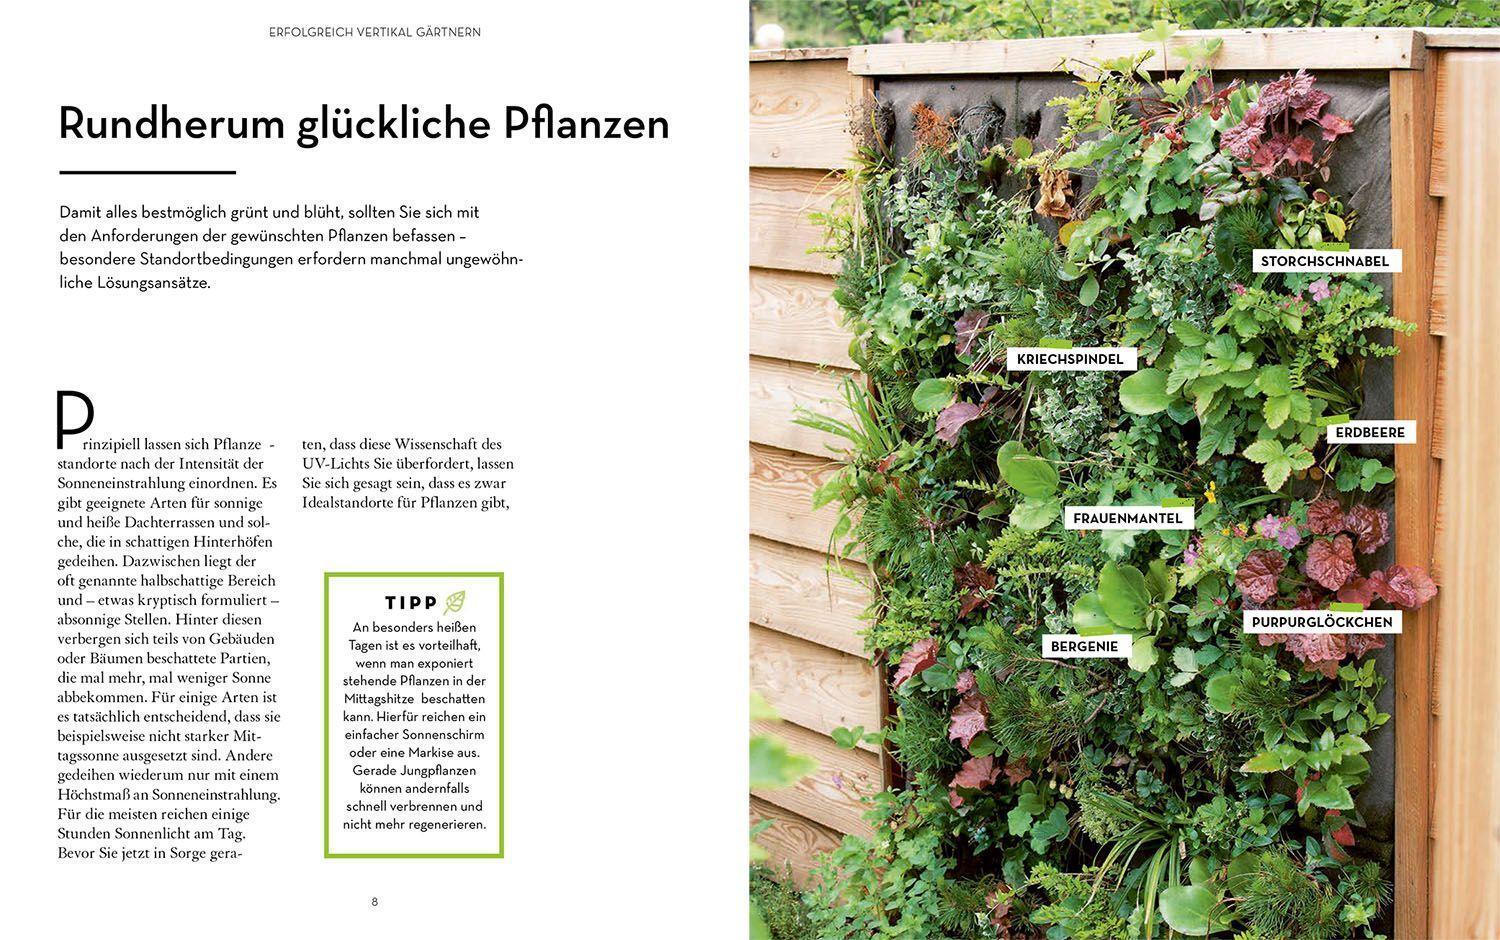 Bild: 9783440174487 | Vertikal gärtnern | Grüne Ideen für kleine Gärten, Balkon & Terrasse